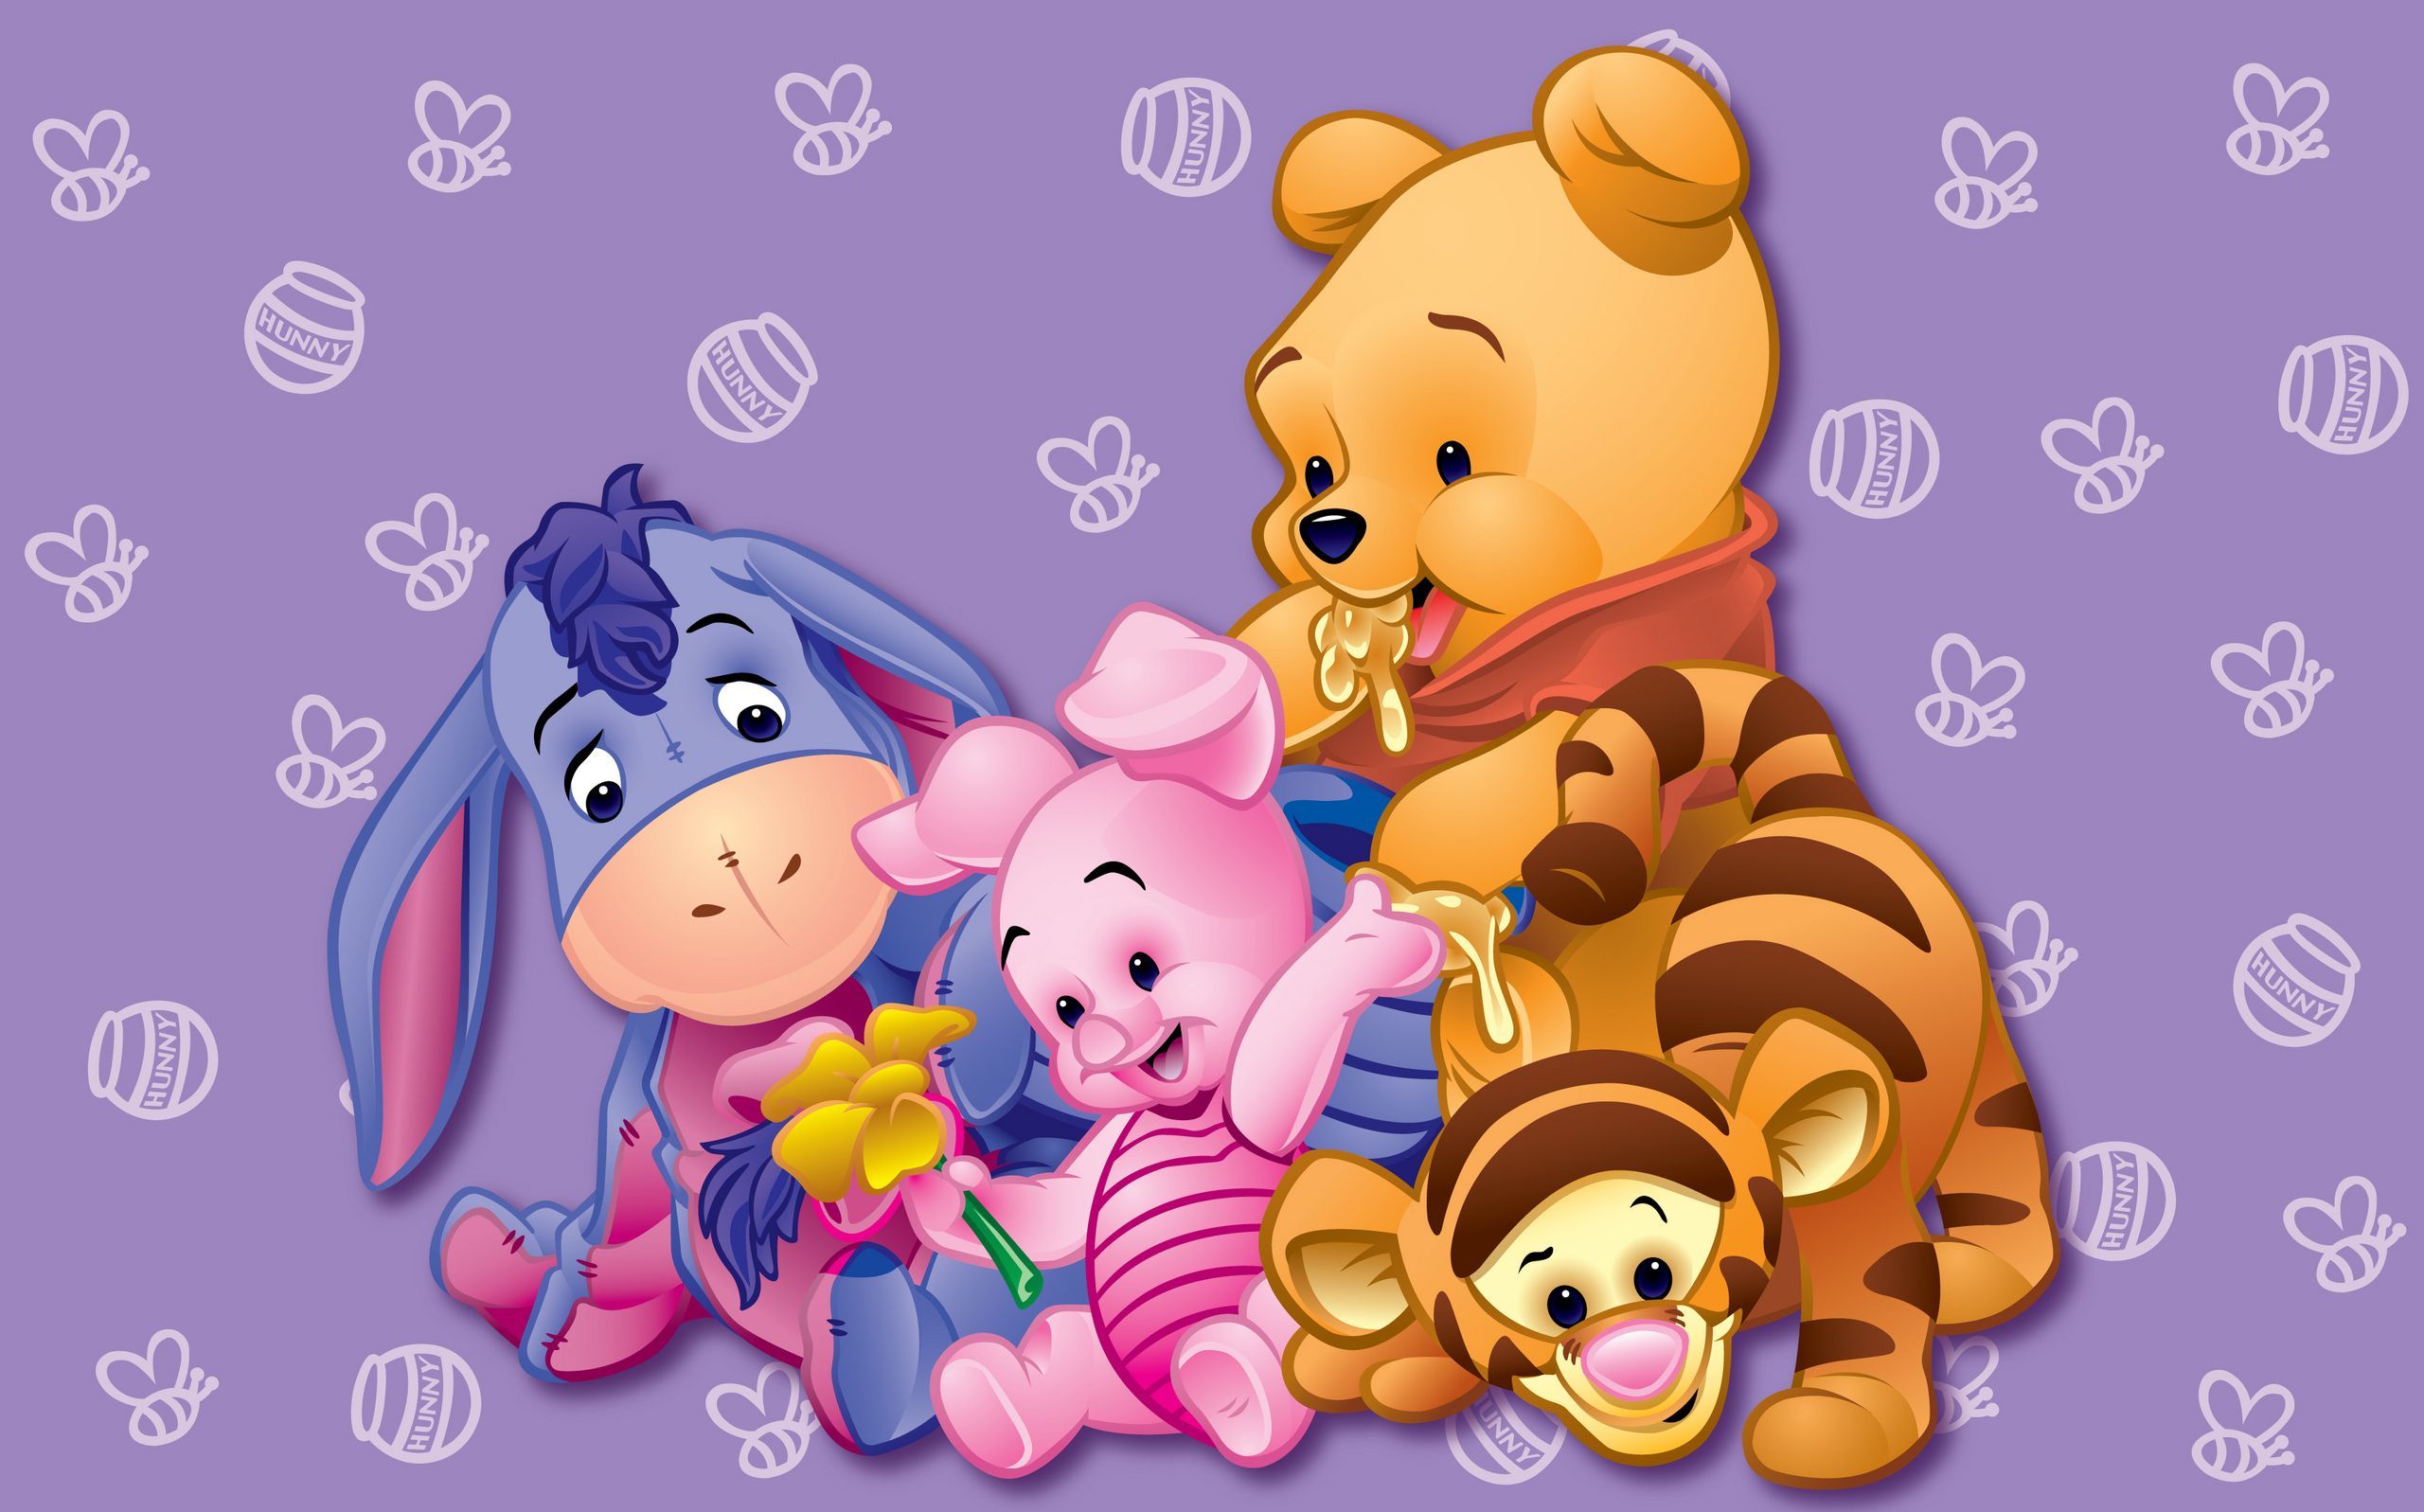 2560x1597 Winnie the Pooh Desktop Wallpaper - Top Free Winnie the Pooh on W...